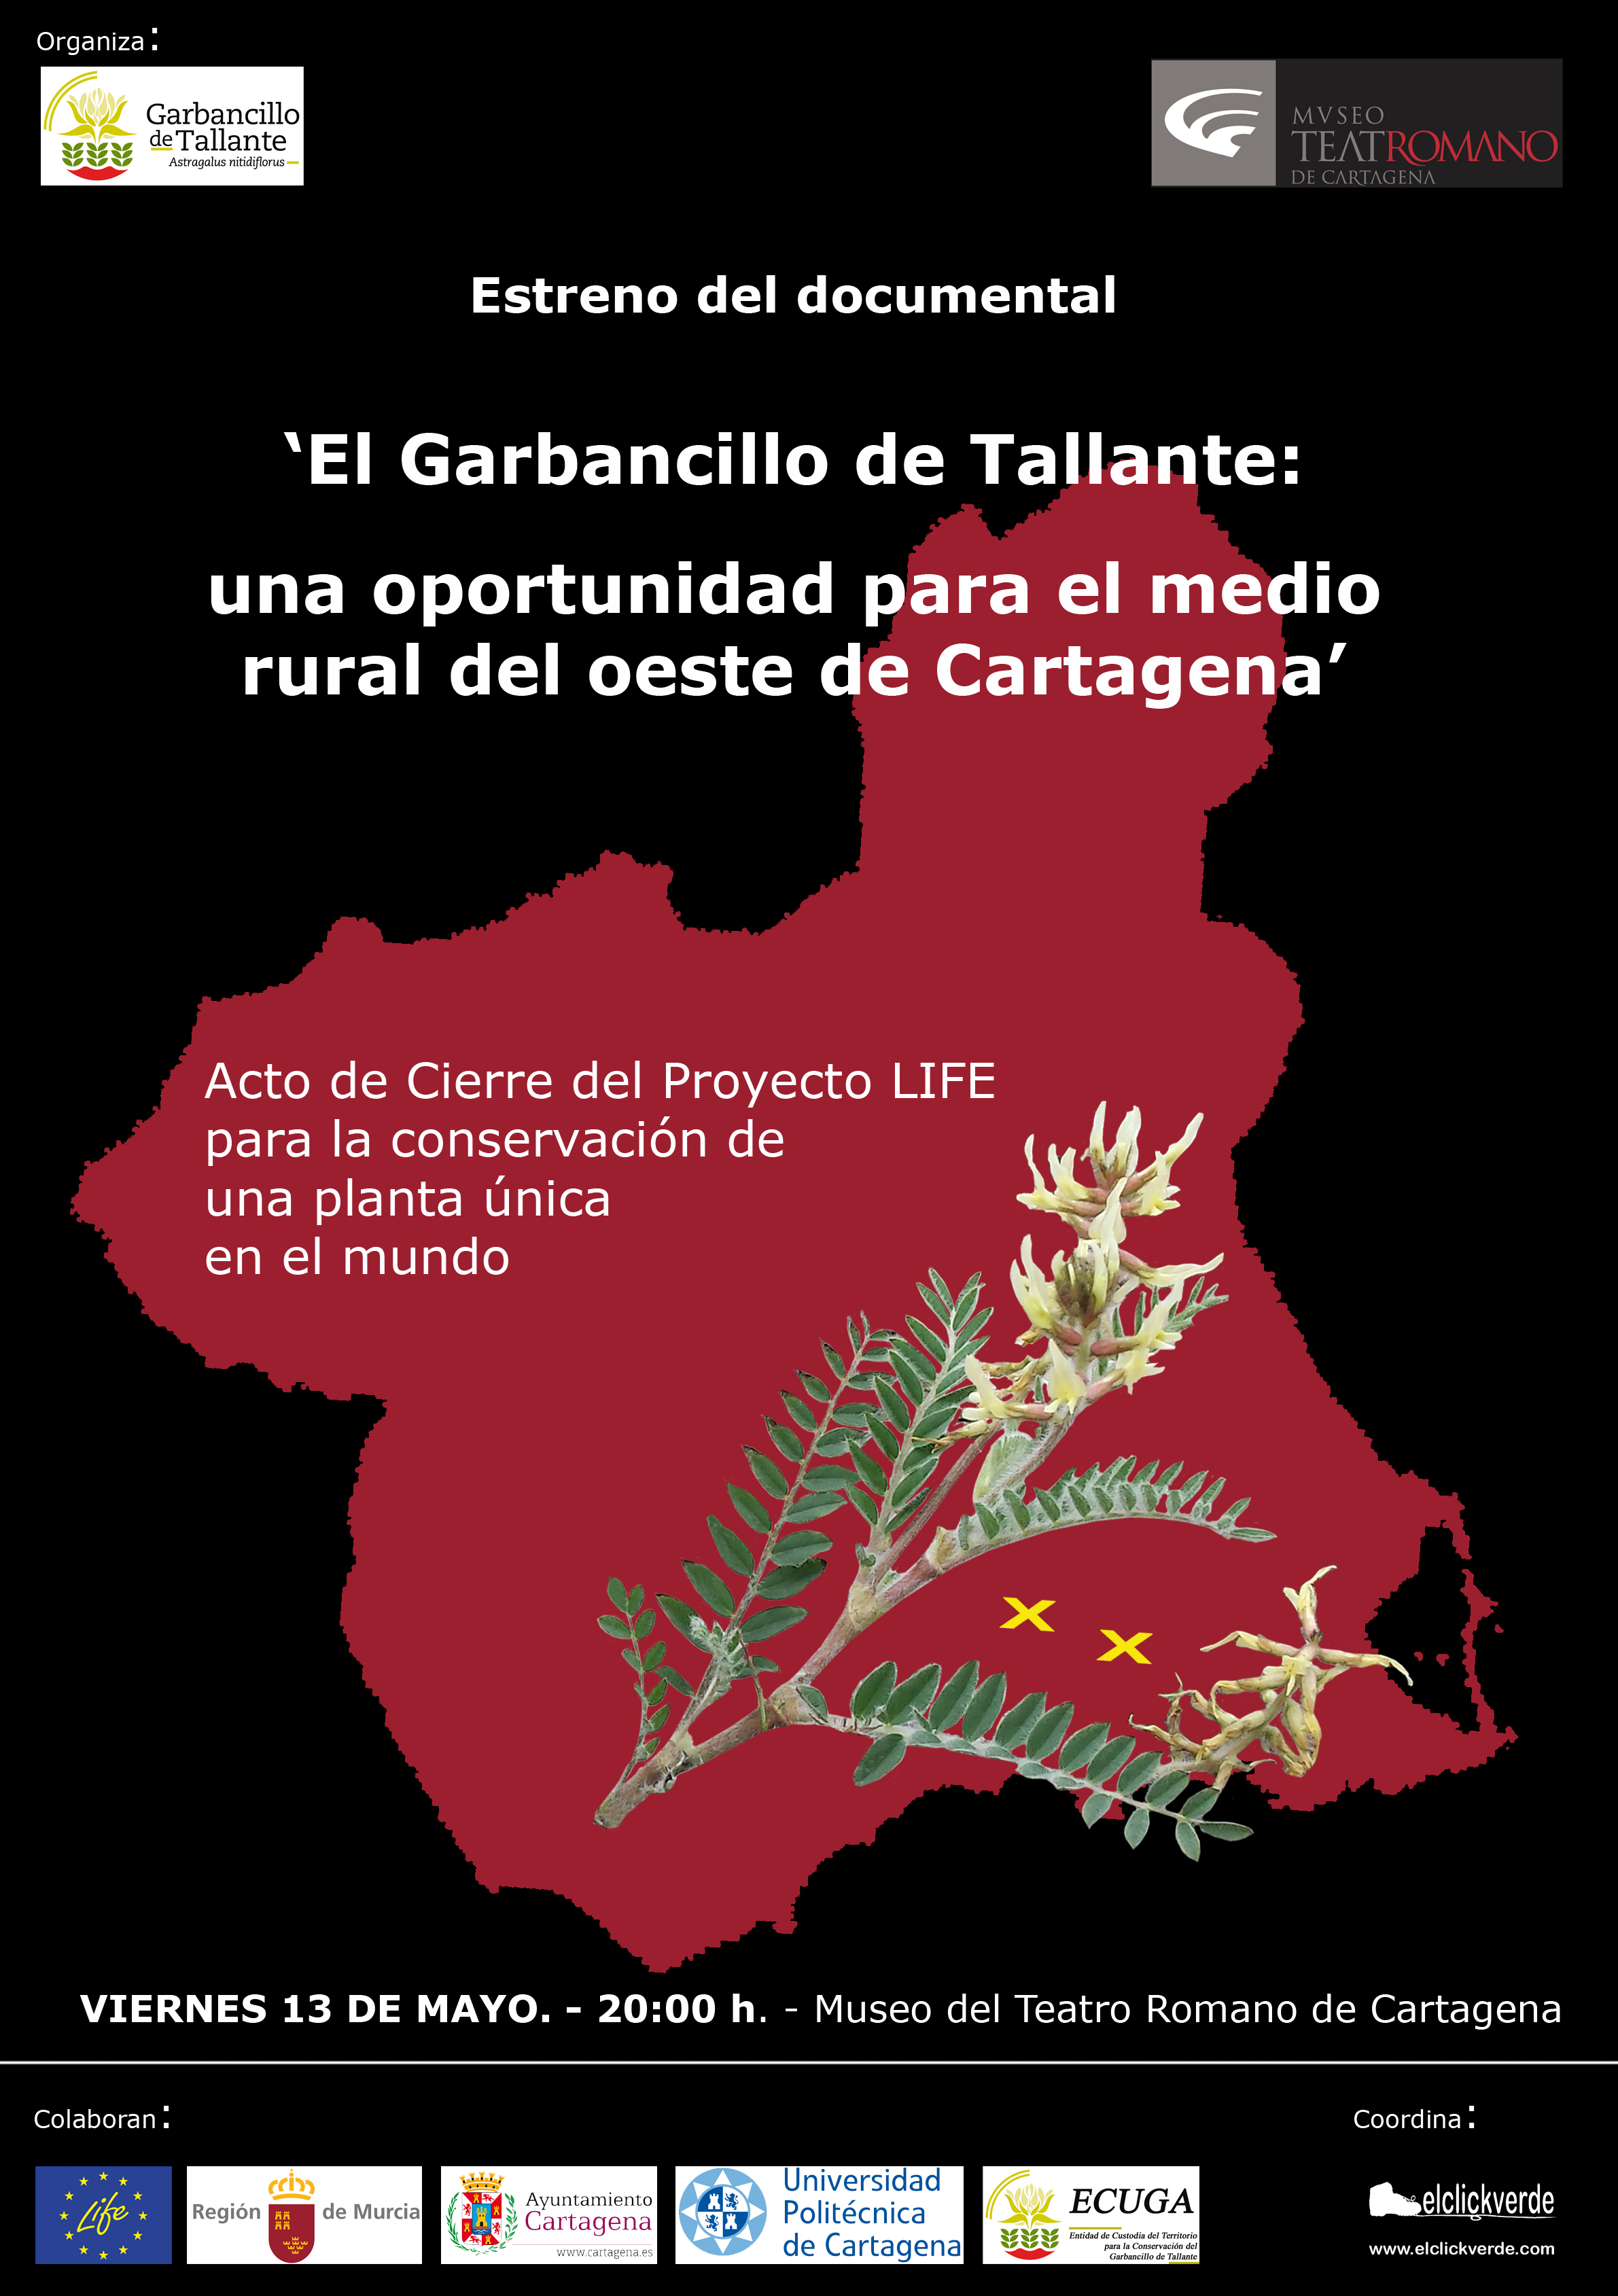 Estreno del documental 'El Garbancillo de Tallante: una oportunidad para el medio rural del oeste de Cartagena'.